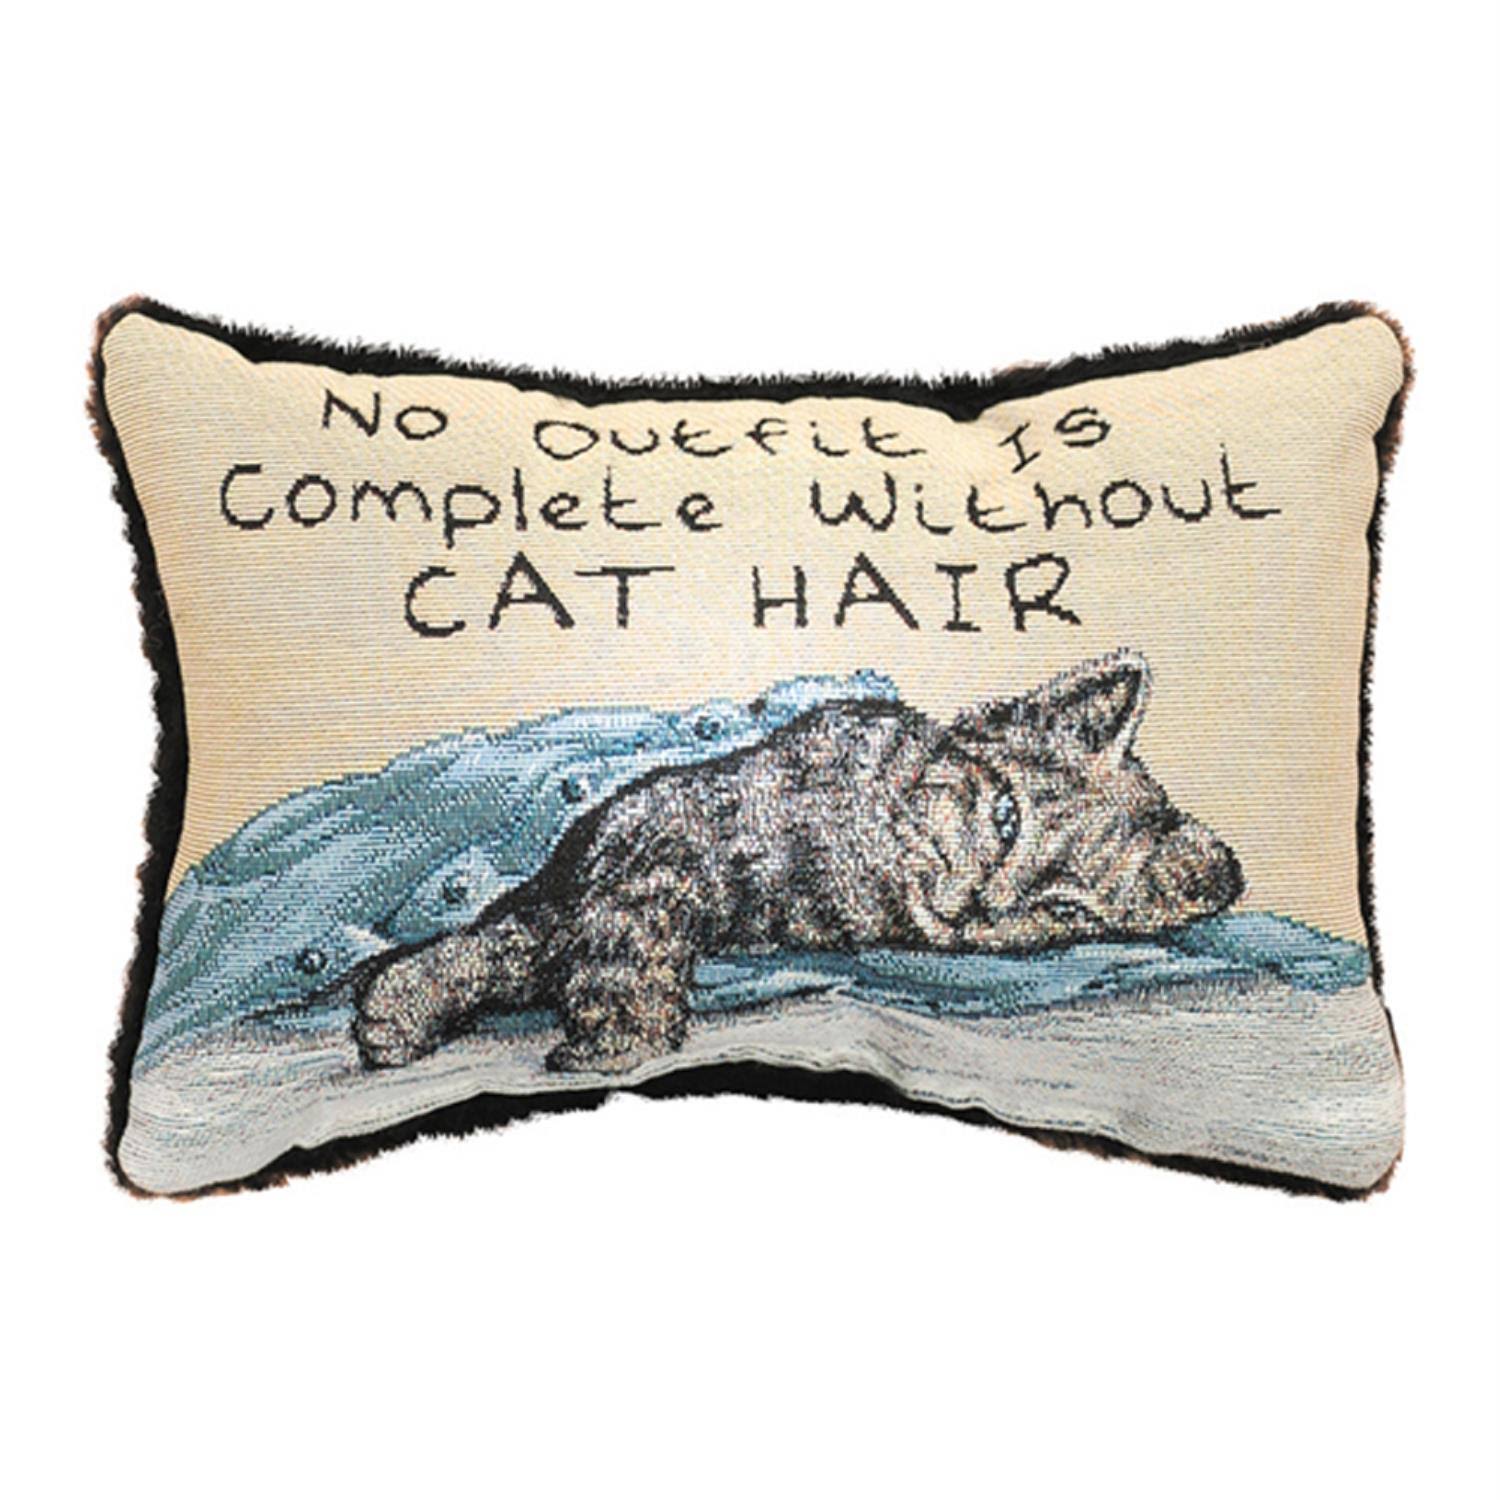 Manual Decorative Throw Pillow - Without Cat Hair, 12.5" x 8.5"